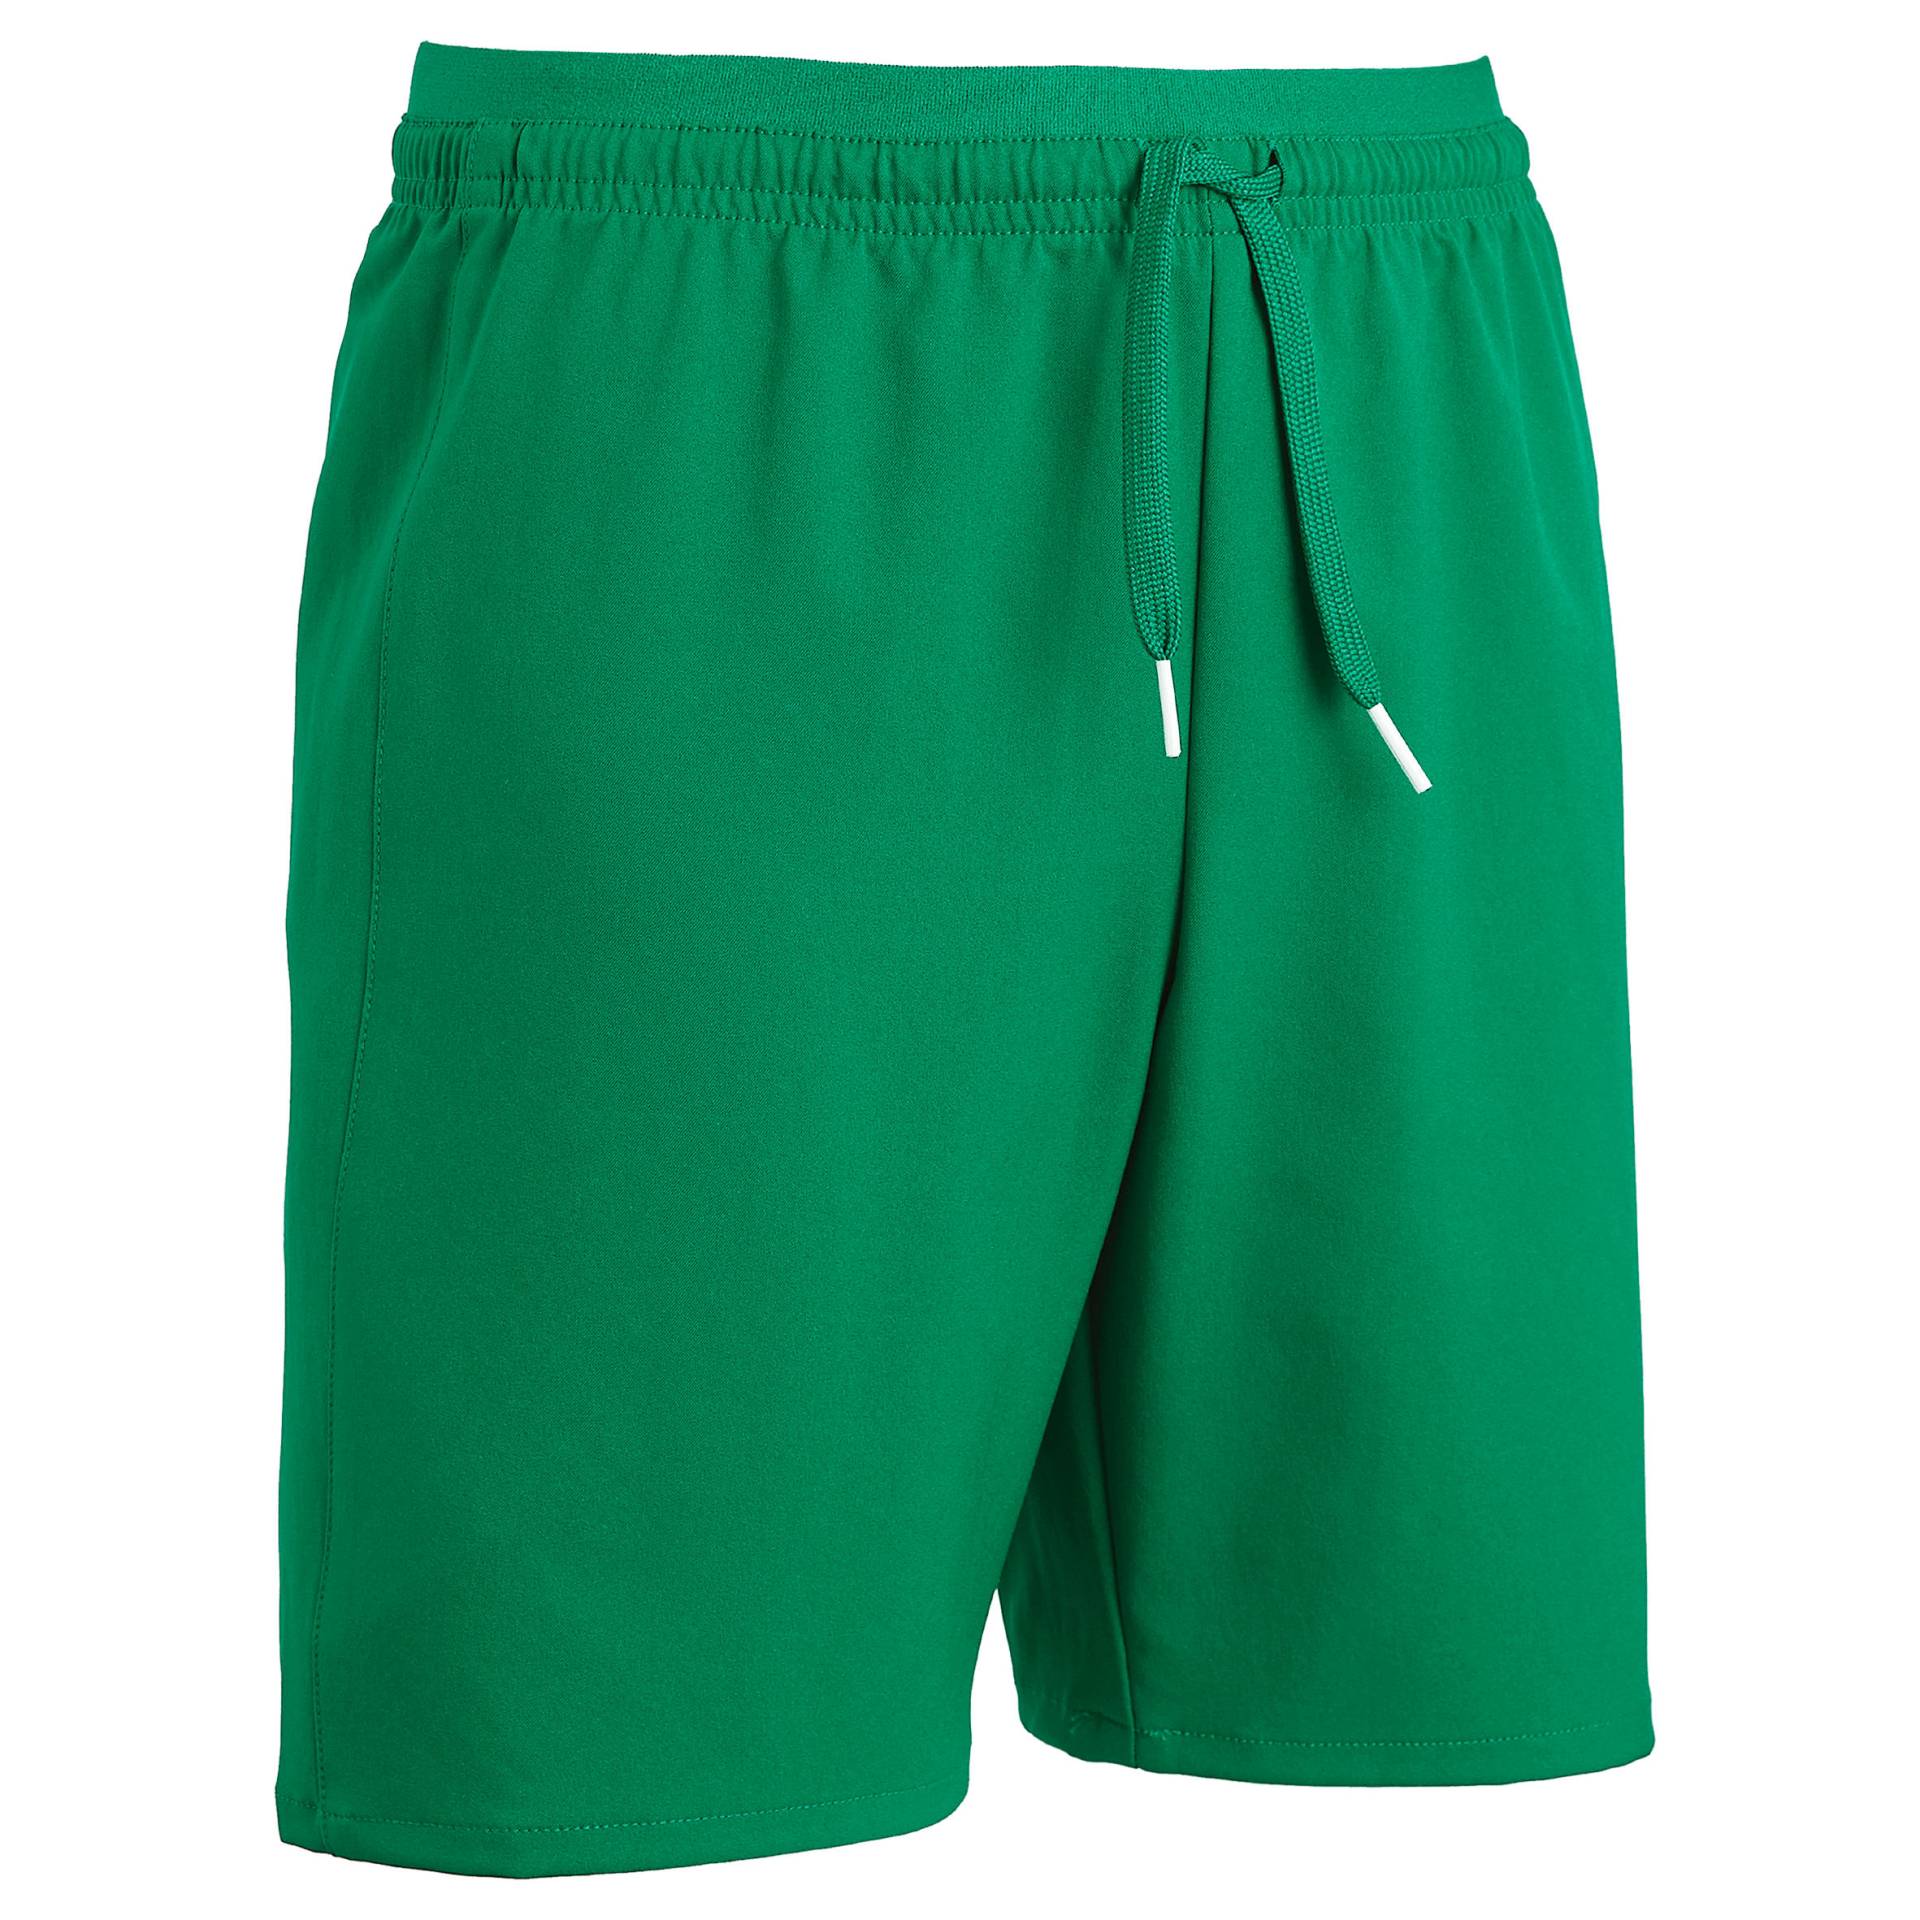 Kinder Fussball Shorts VIRALTO grün von KIPSTA